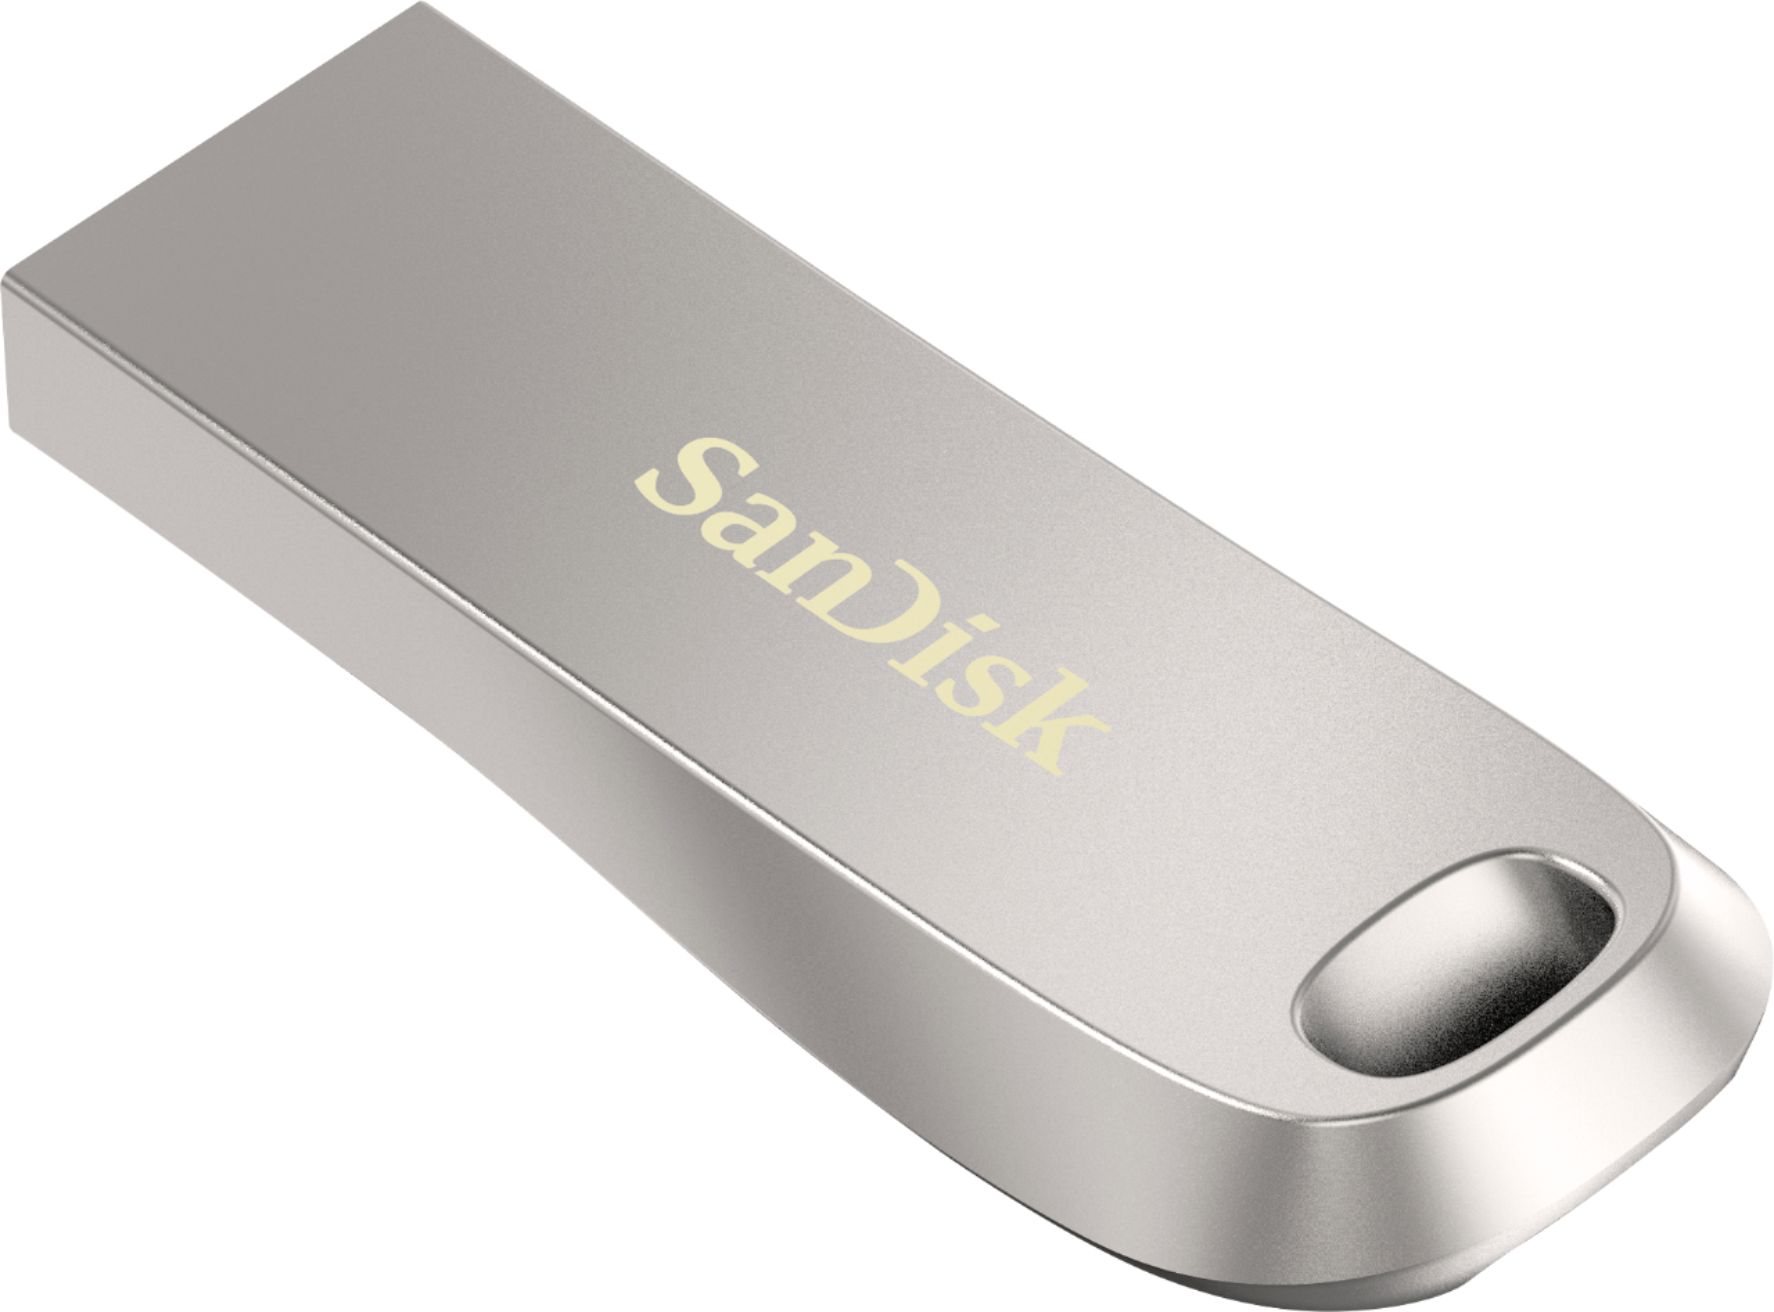 Misvisende halvleder ser godt ud SanDisk Ultra Luxe 128GB USB 3.1 Flash Drive Silver SDCZ74-128G-A46 - Best  Buy